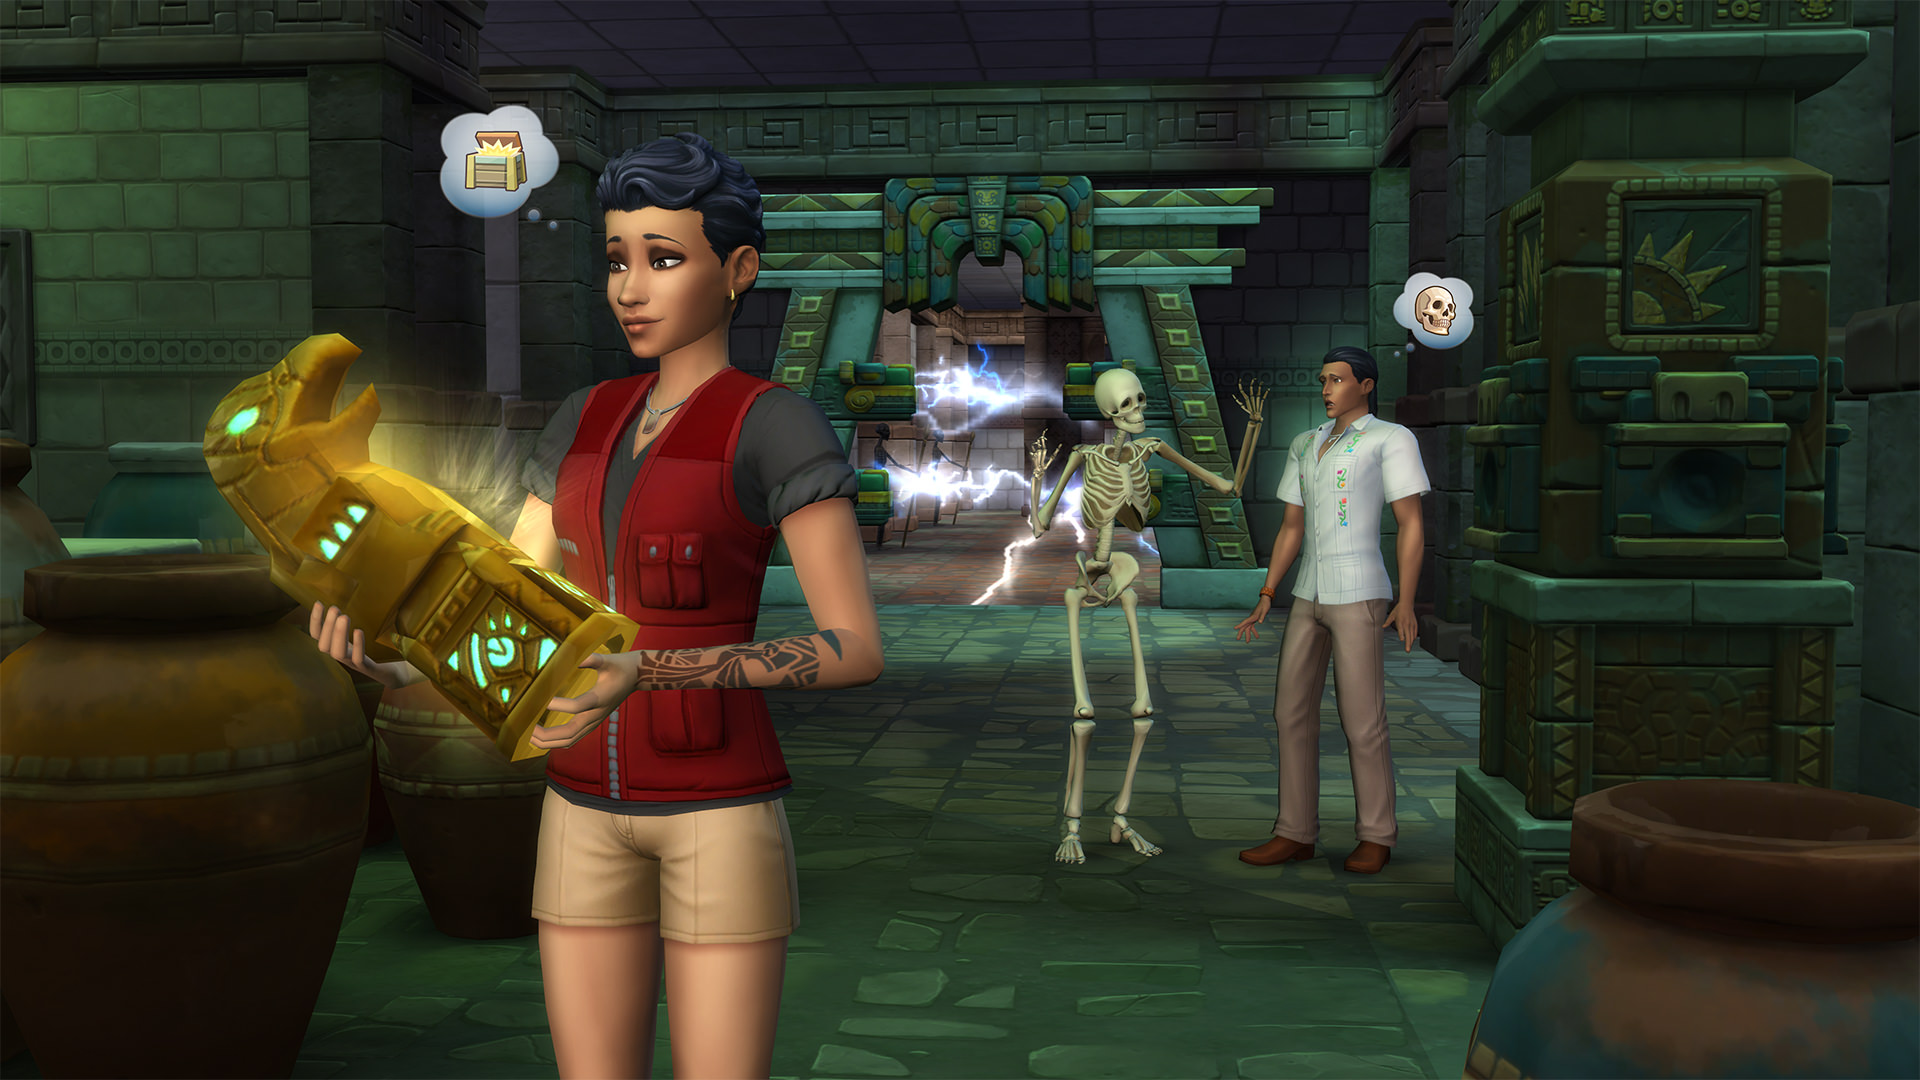 köp alla The Sims 4 DLC